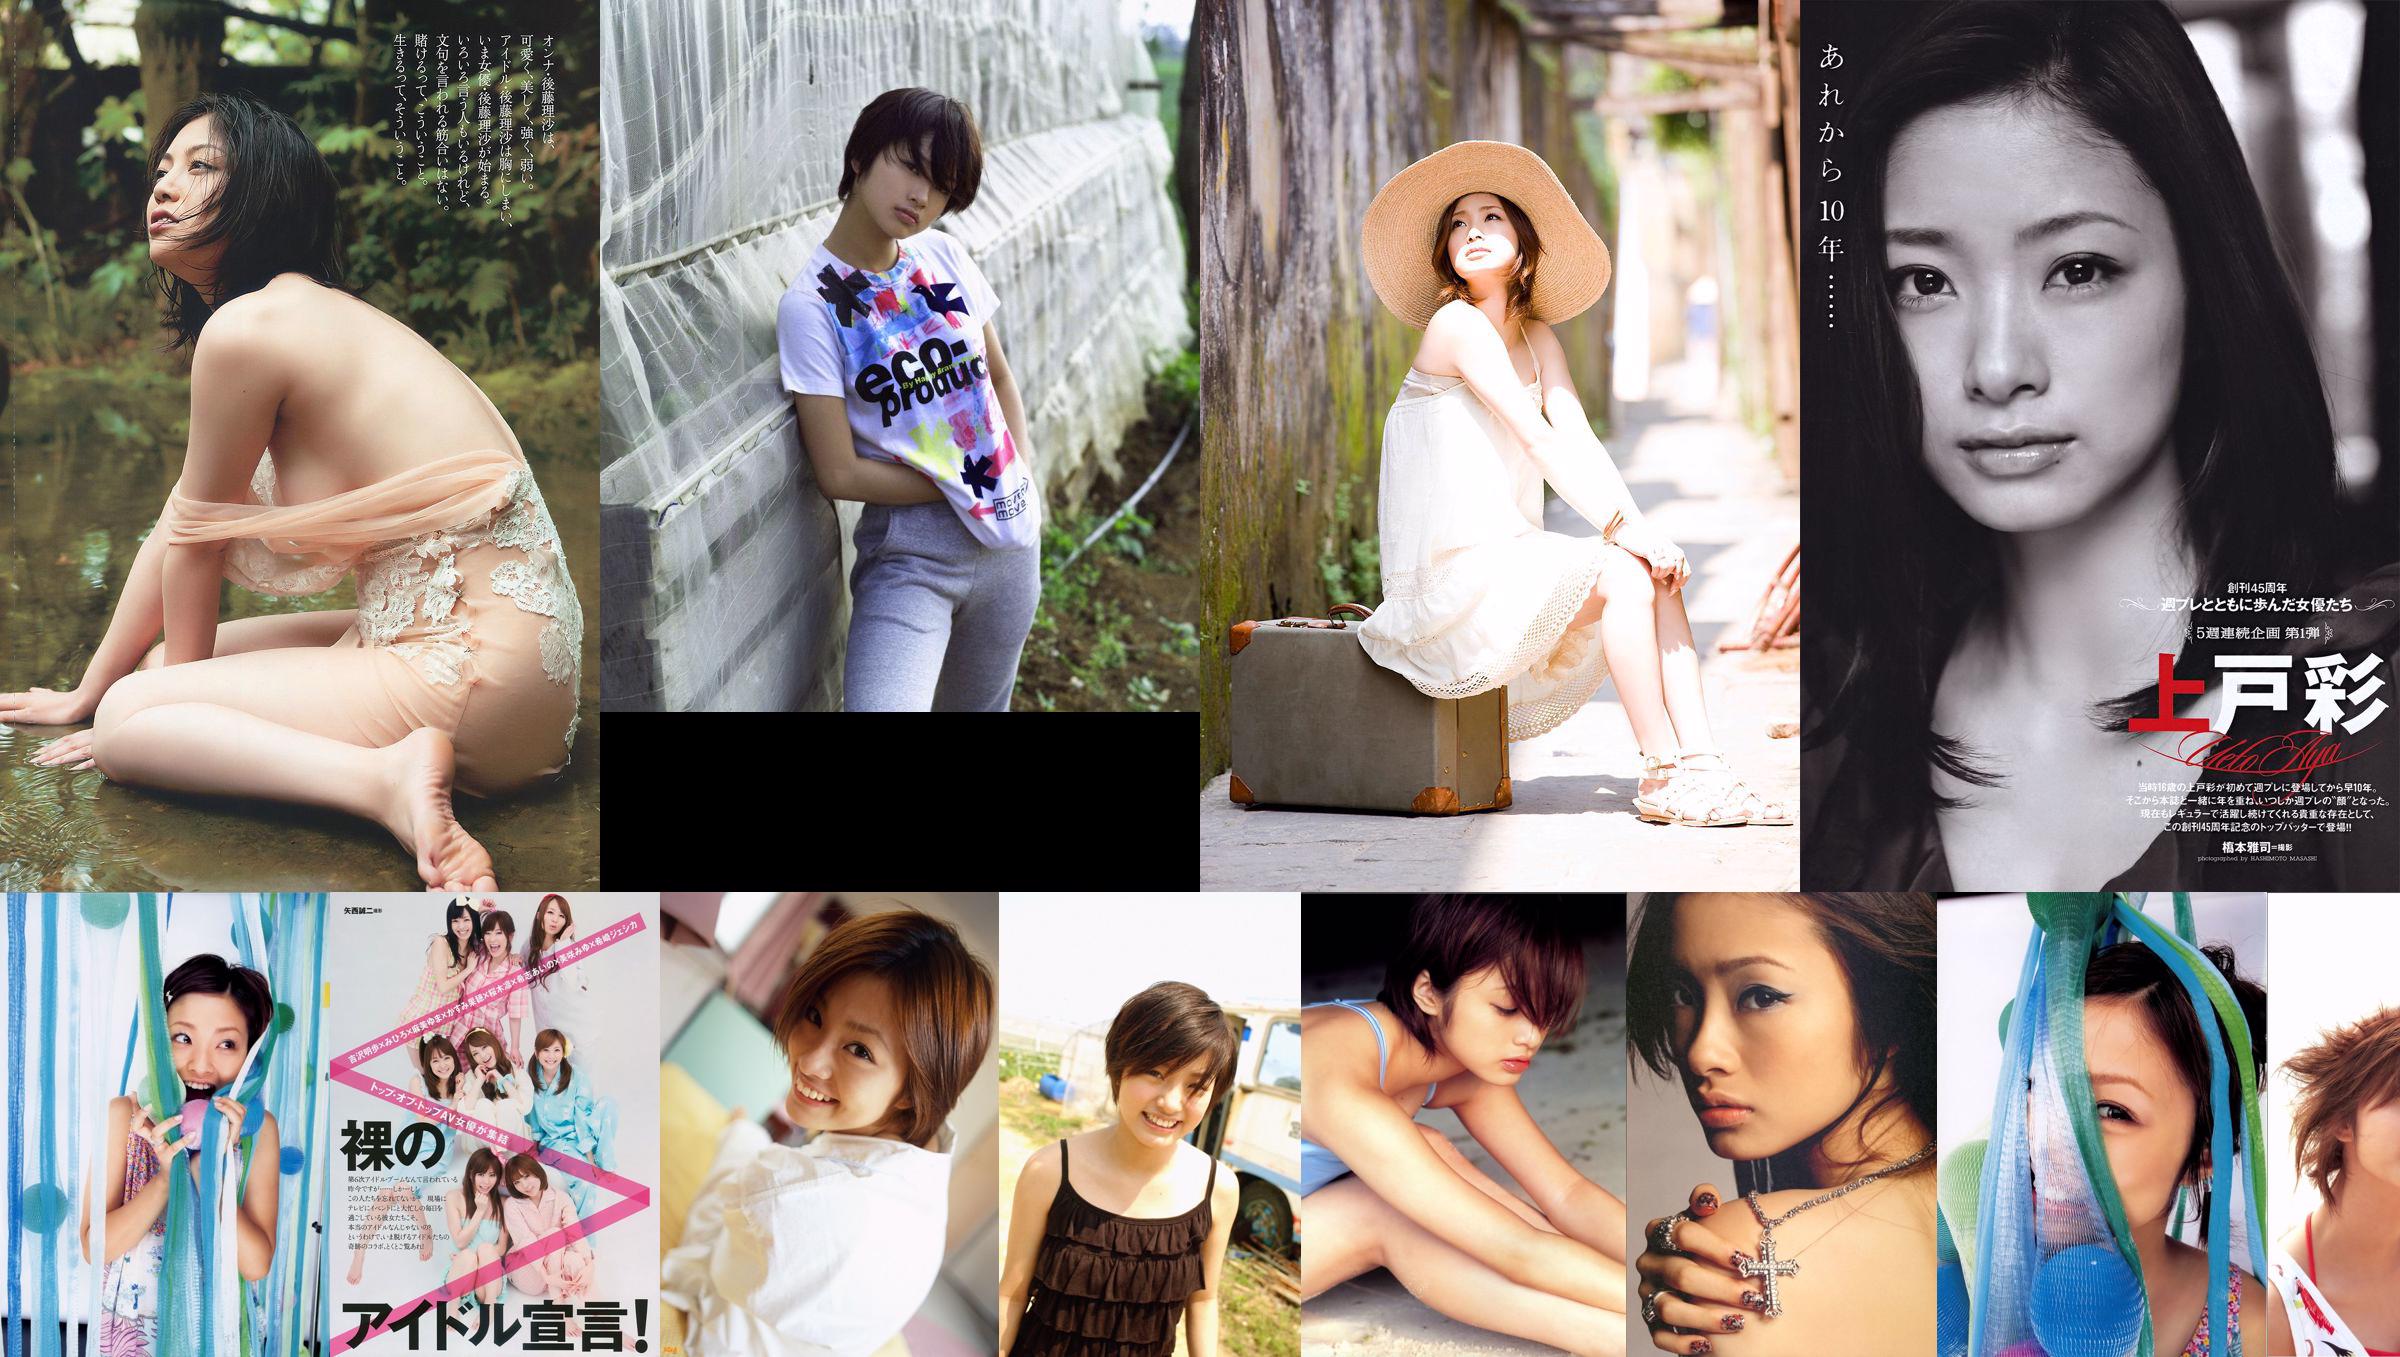 Aya Uedo, Aizawa, Kafei, AKB48 Shiraishi Miho, Goto Risa [Weekly Playboy] 2010 No.19-20 Photo Magazine No.13c4cc Page 5